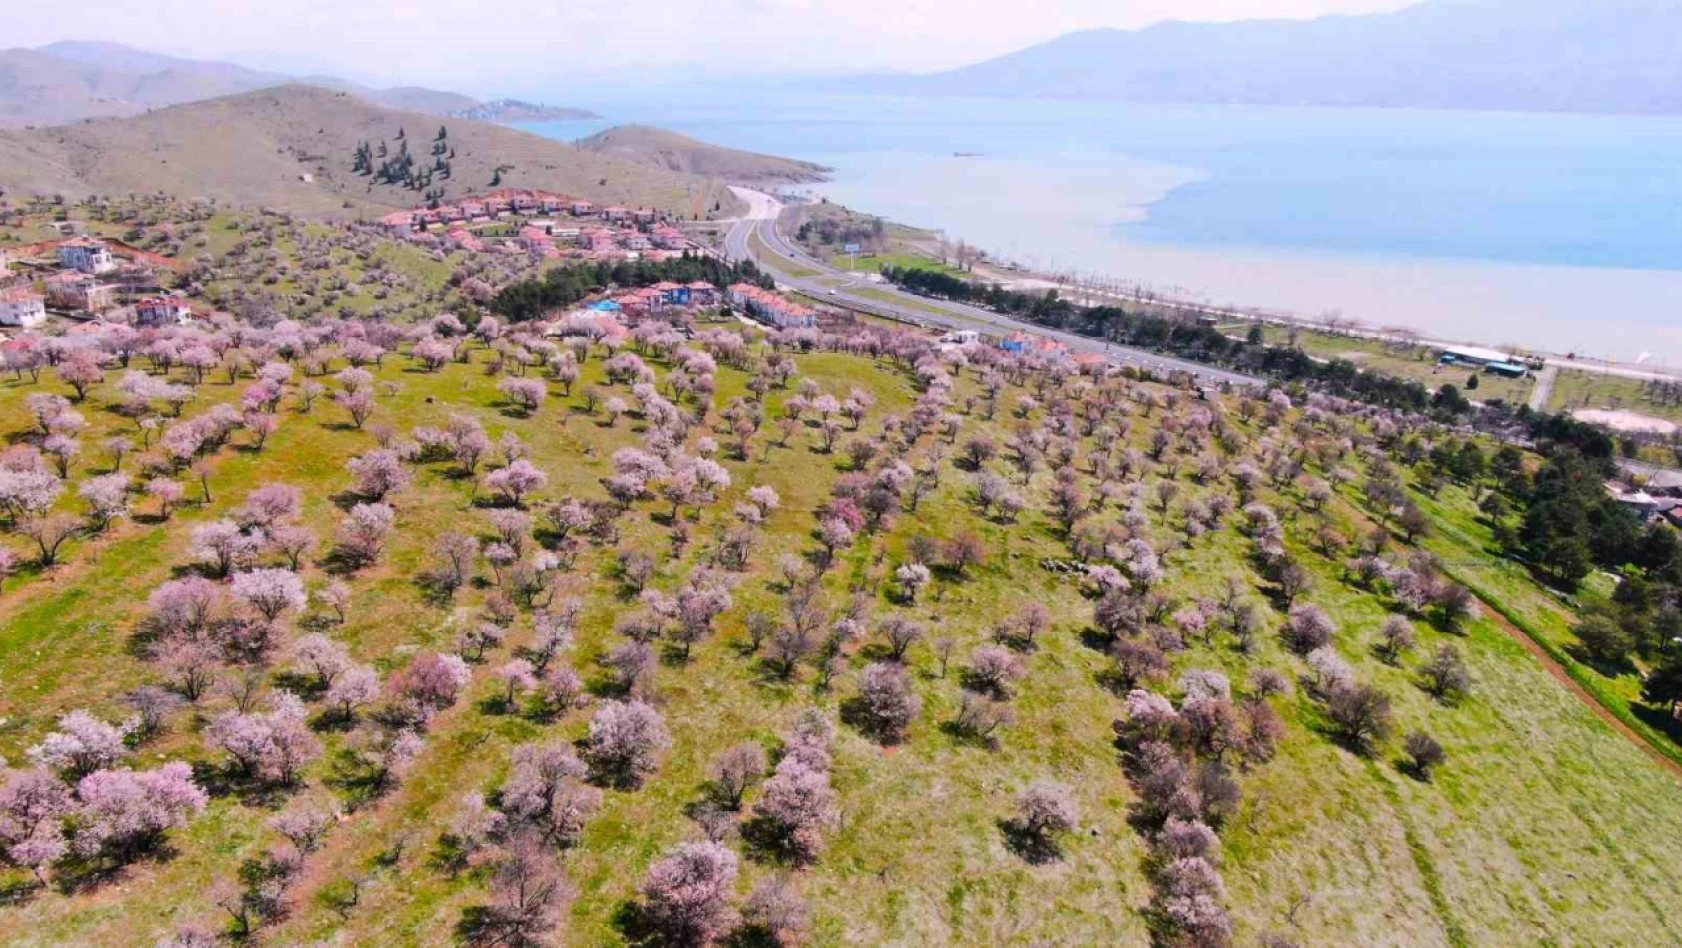 Hazar Gölü kıyısında badem ağaçları çiçek açtı, eşsiz manzara havadan görüntülendi